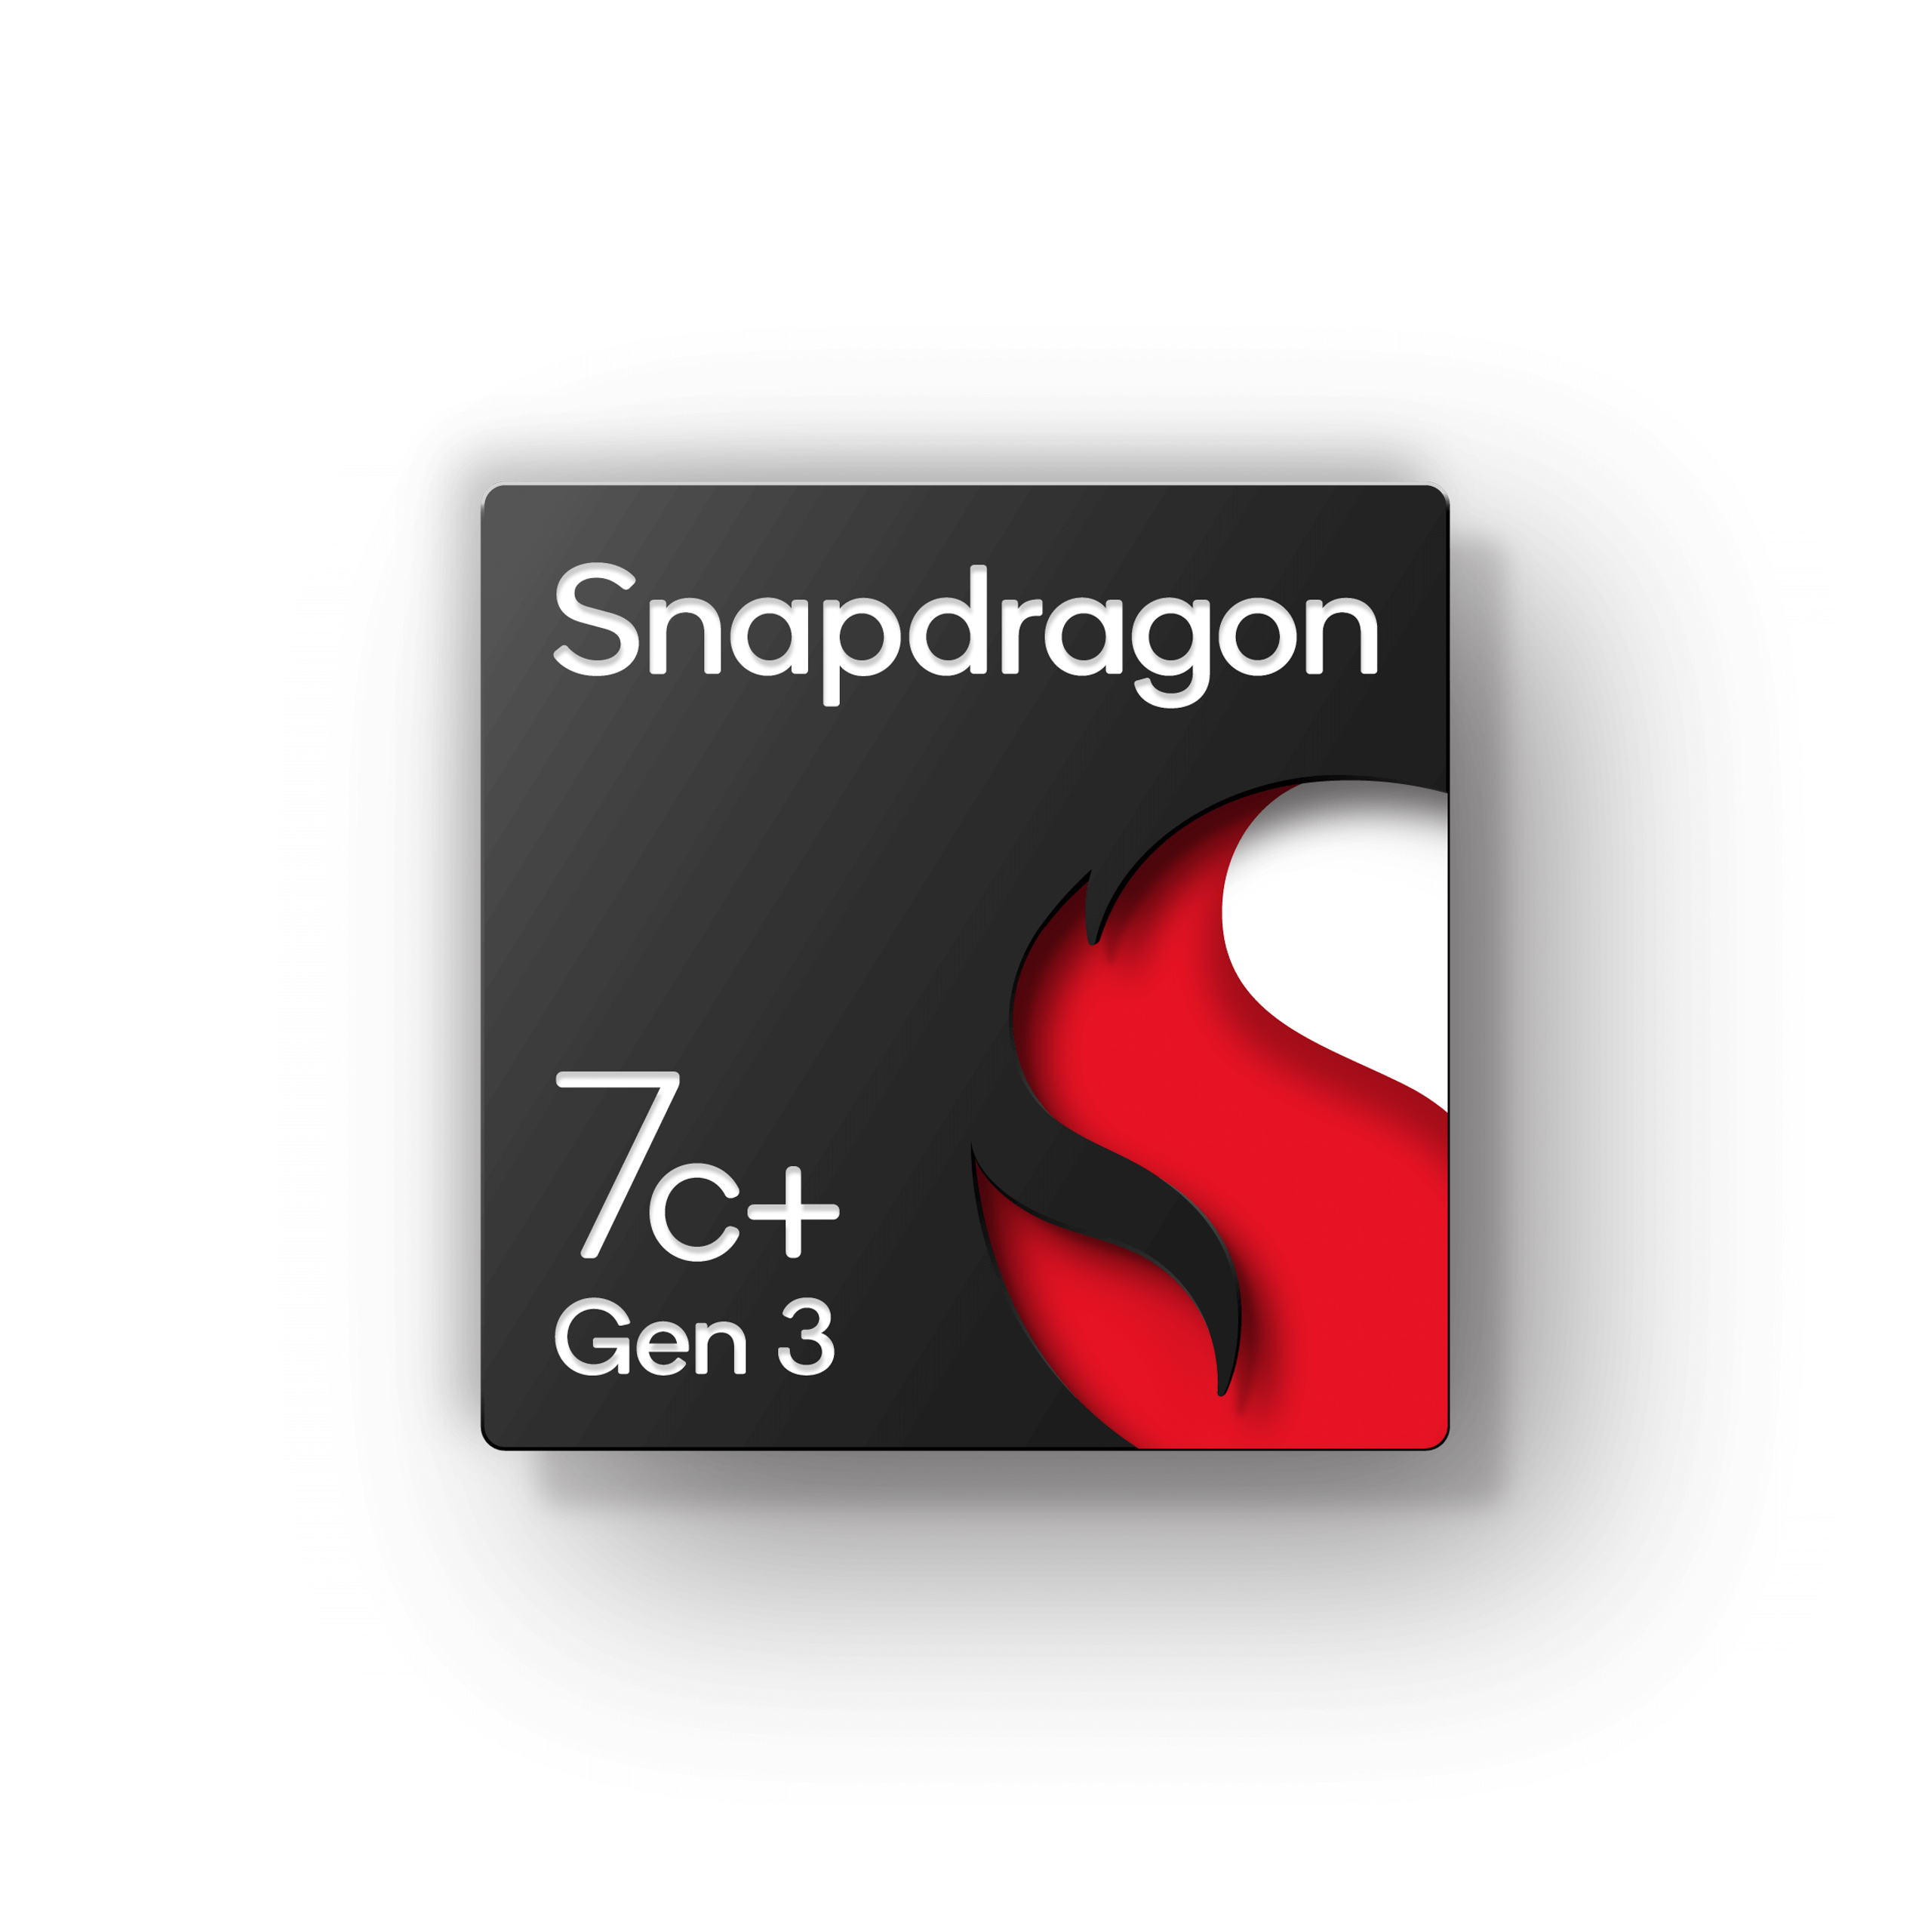 Qualcomm ra mắt vi xử lý Snapdragon 8cx Gen 3 và 7c+ Gen 3 dành cho PC dựa trên kiến trúc ARM